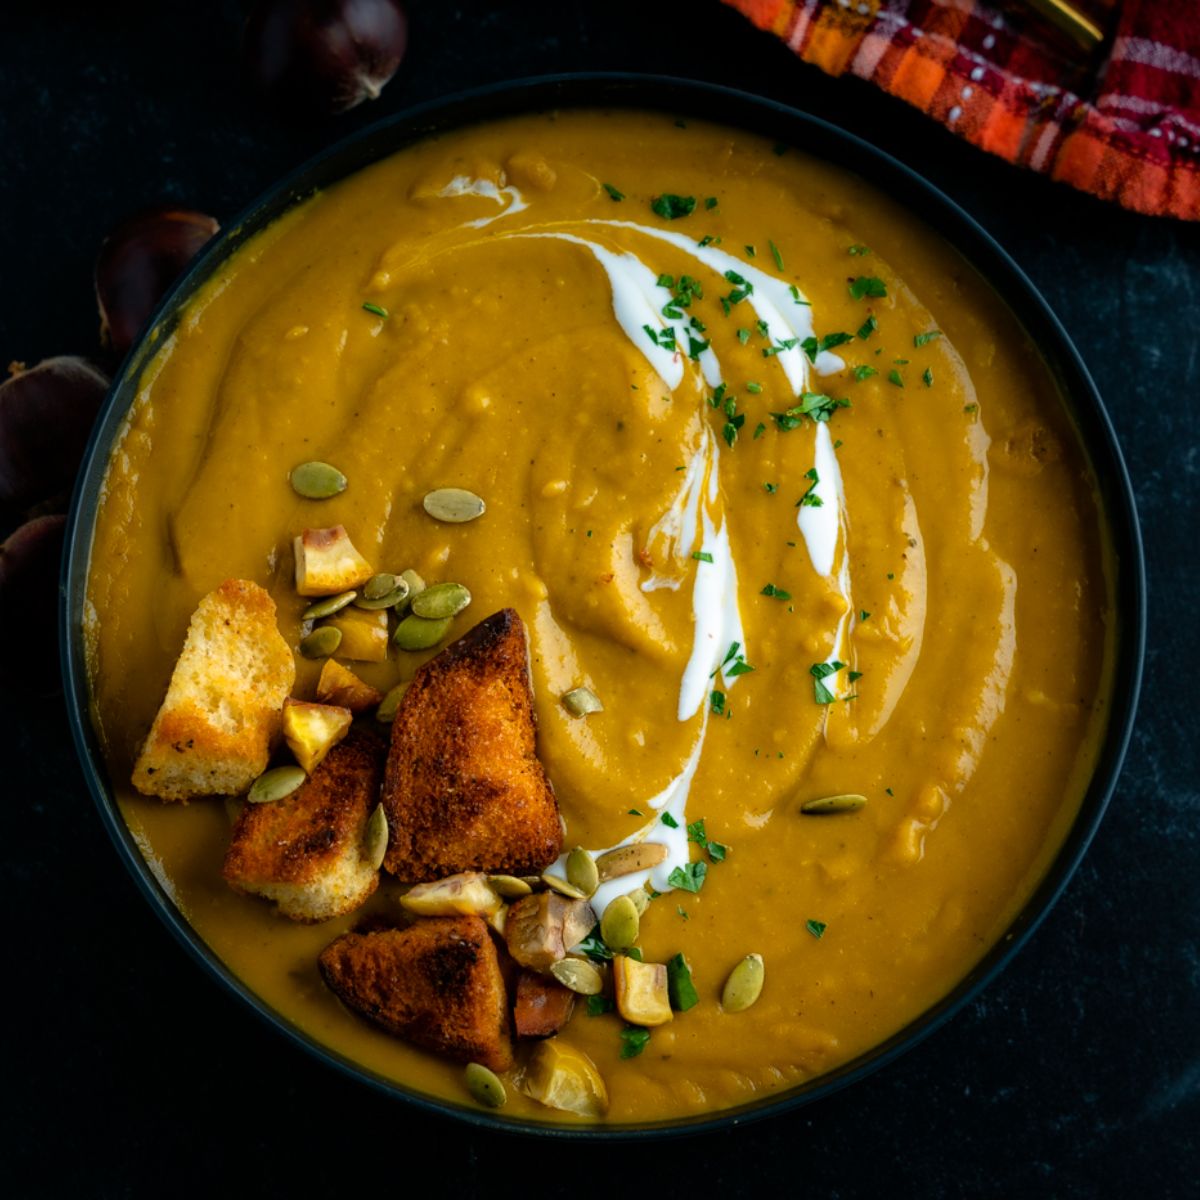 golden orange pumpkin soup garnished with pumpkin seeds, a cream sauce, golden brown croutons, and fresh herbs.